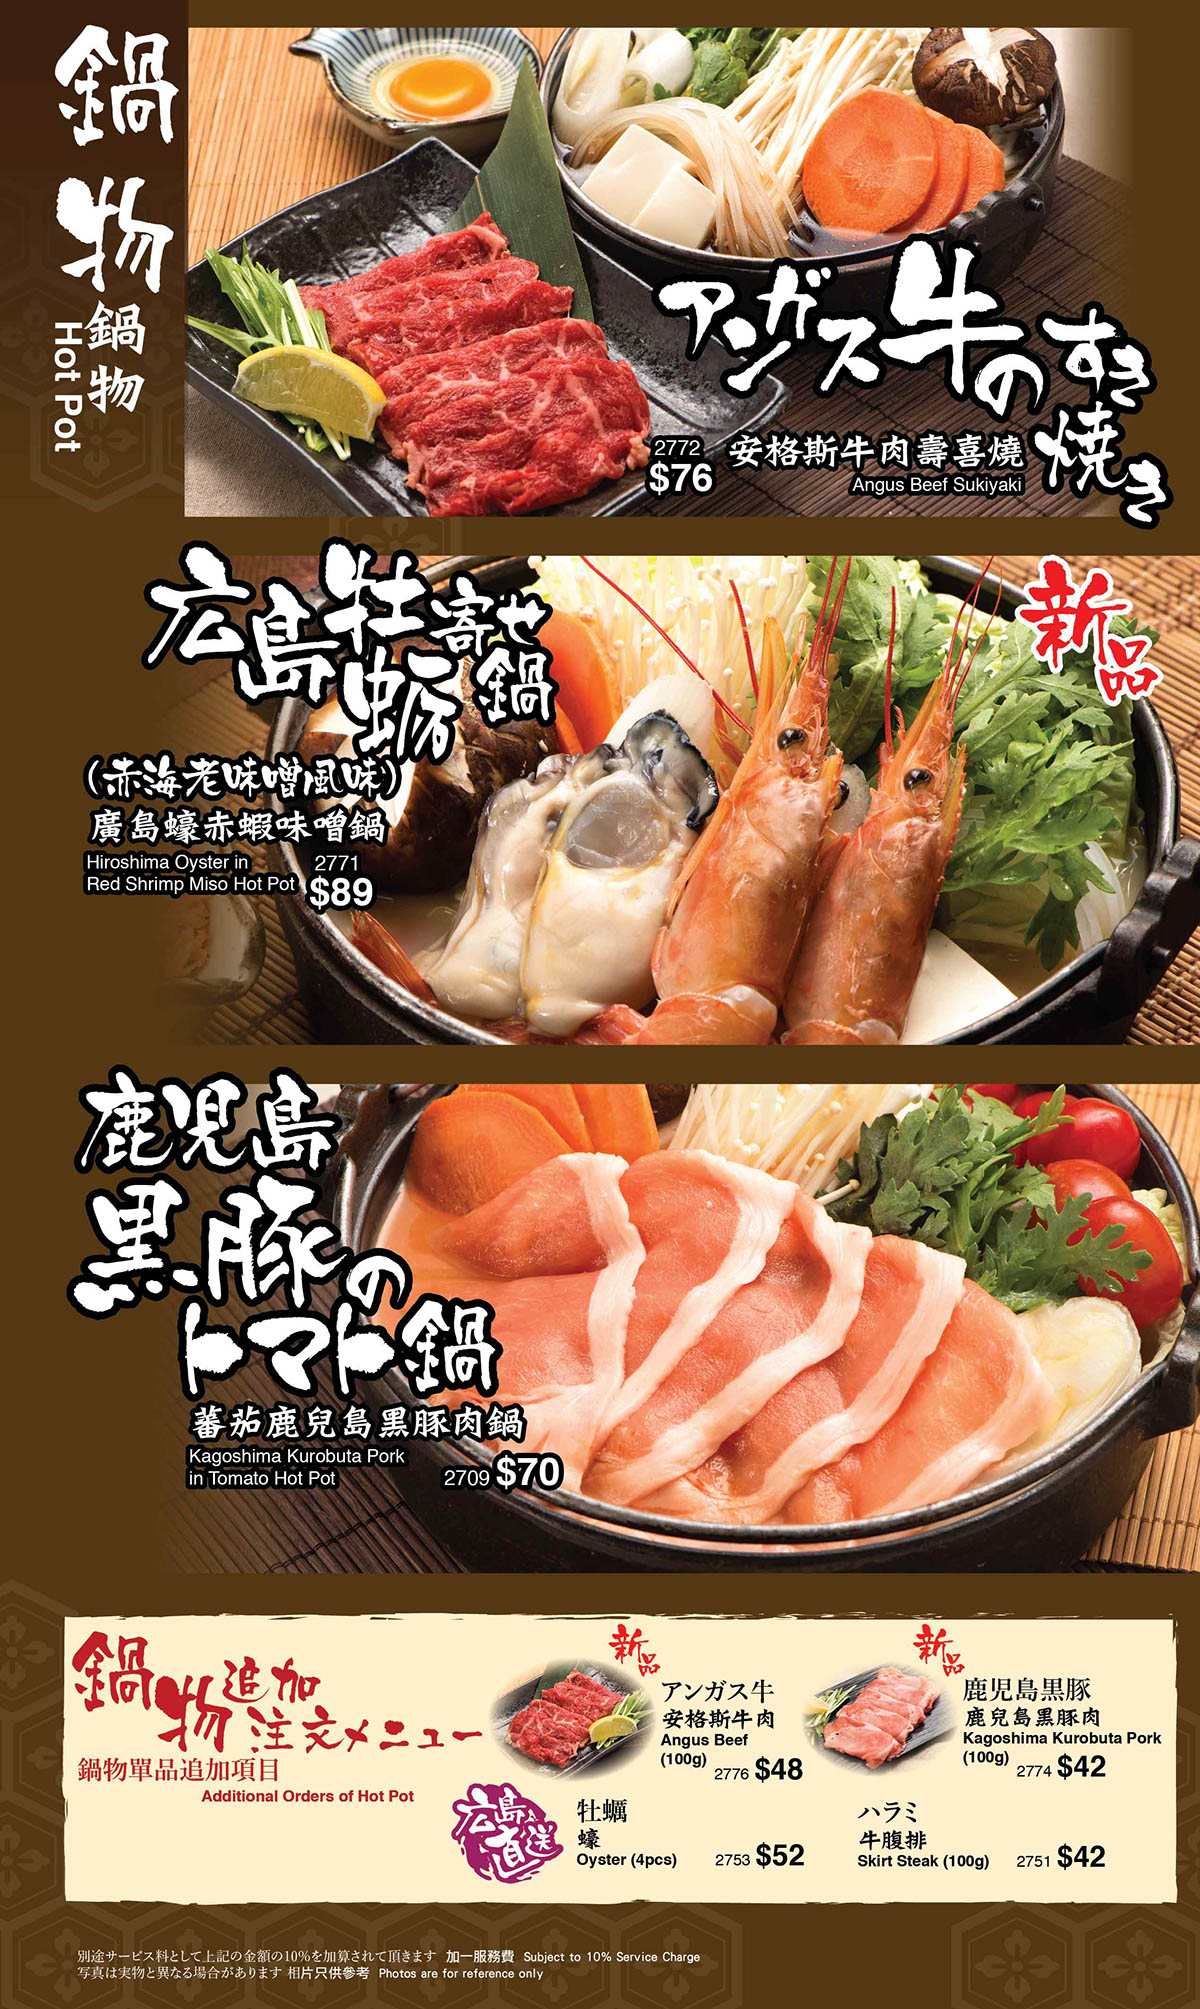 japanese cuisine japanese food food menu